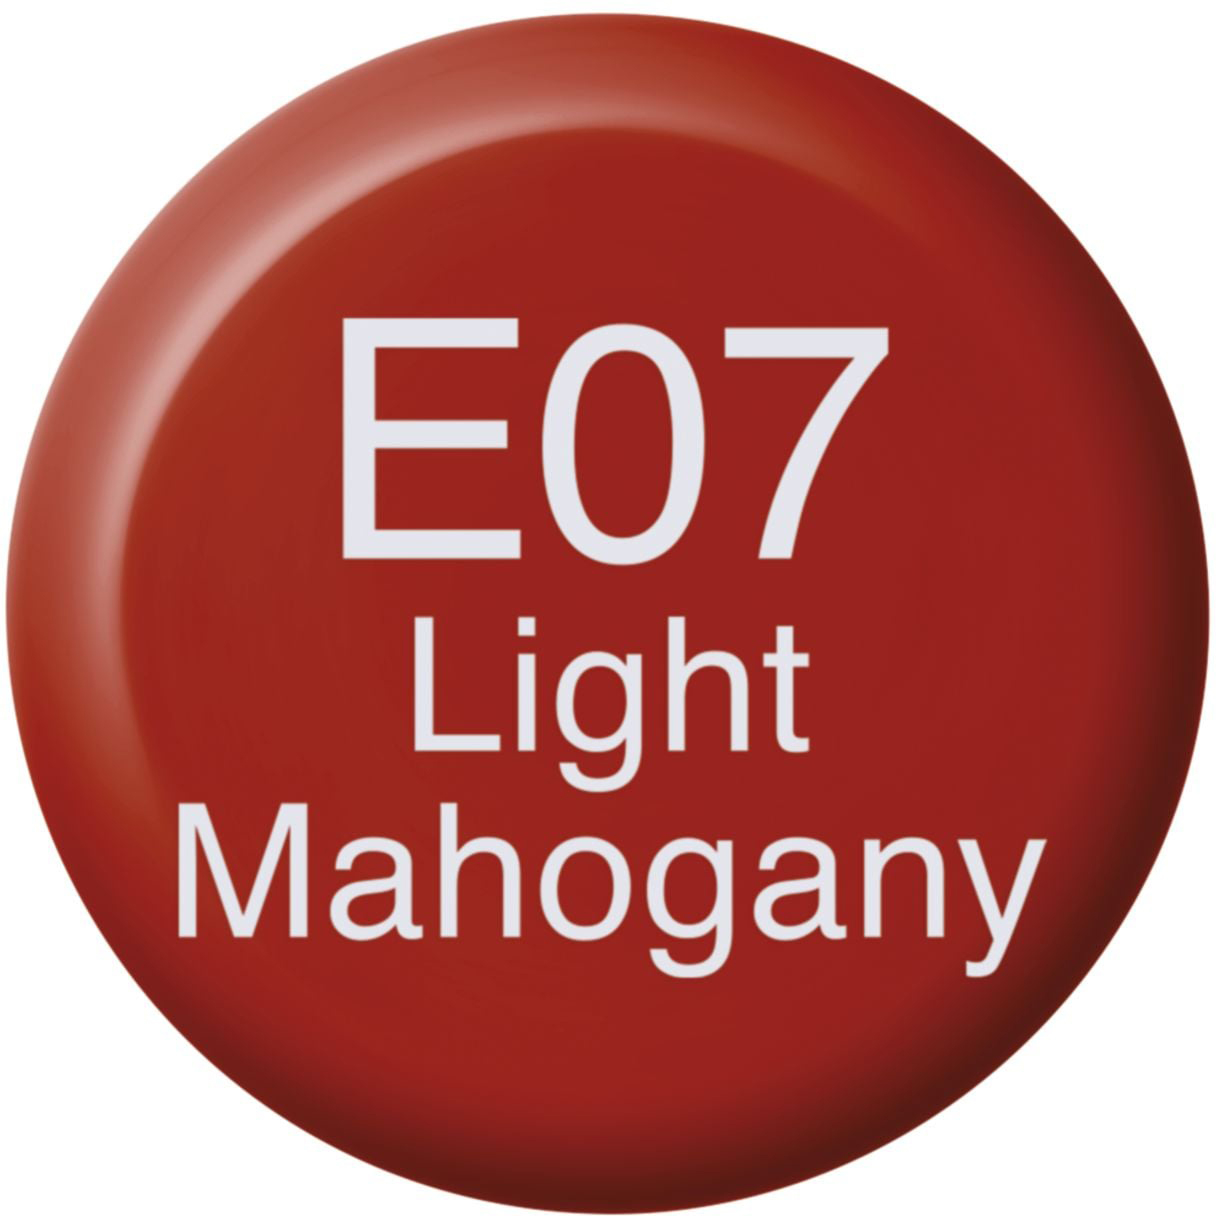 COPIC Ink Refill 21076118 E07 - Light Mahogany E07 - Light Mahogany